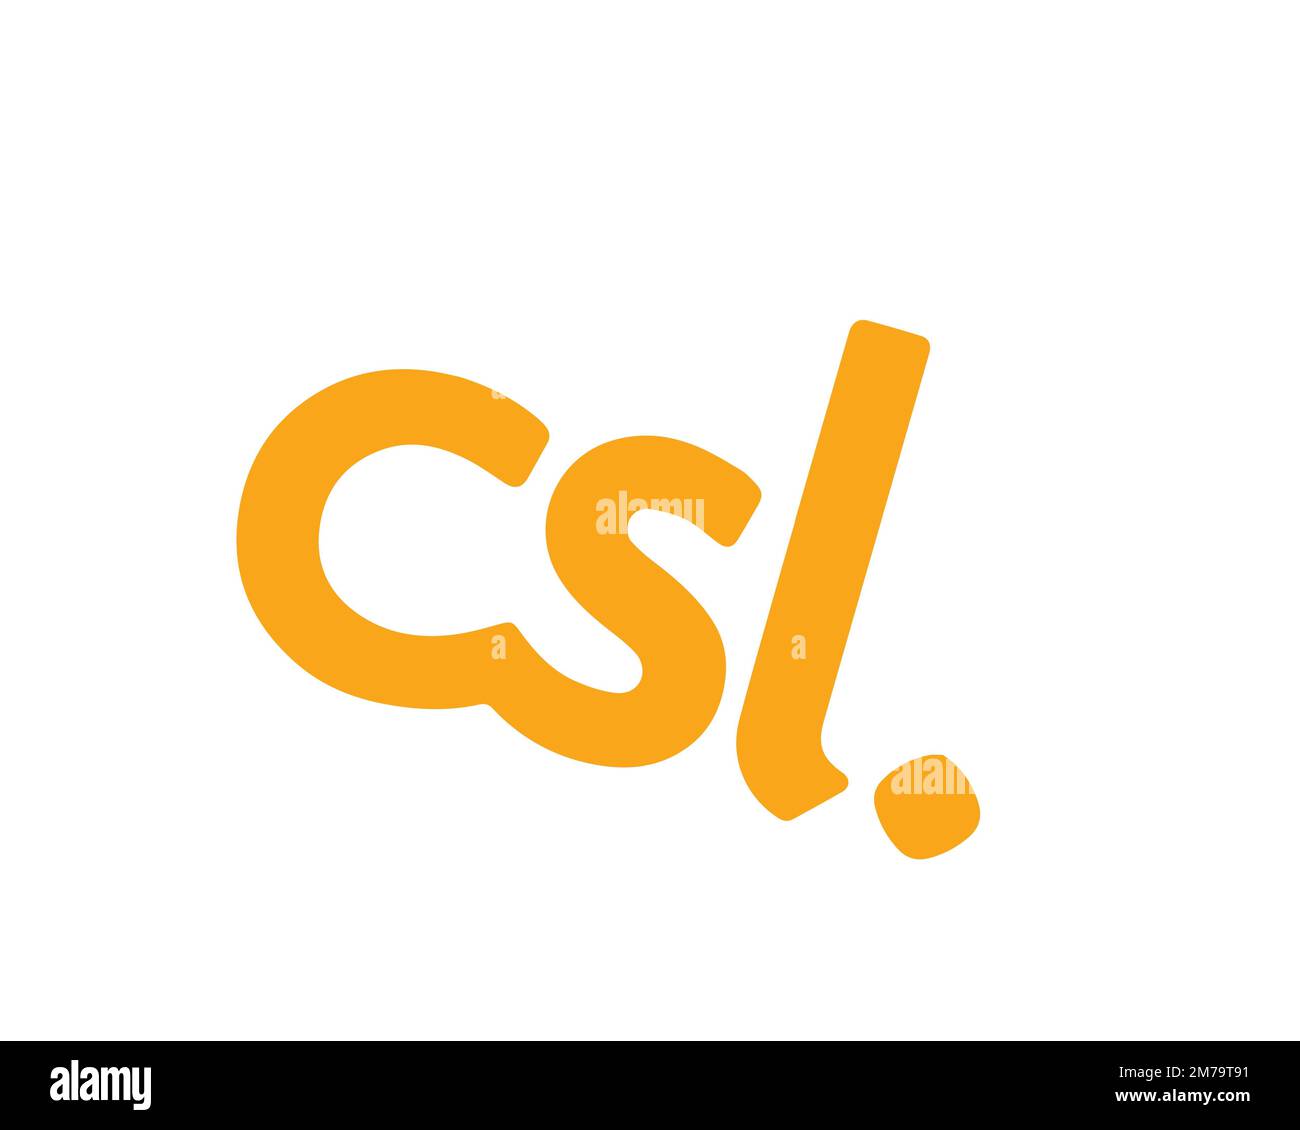 CSL Mobile, logo pivoté, fond blanc B Banque D'Images